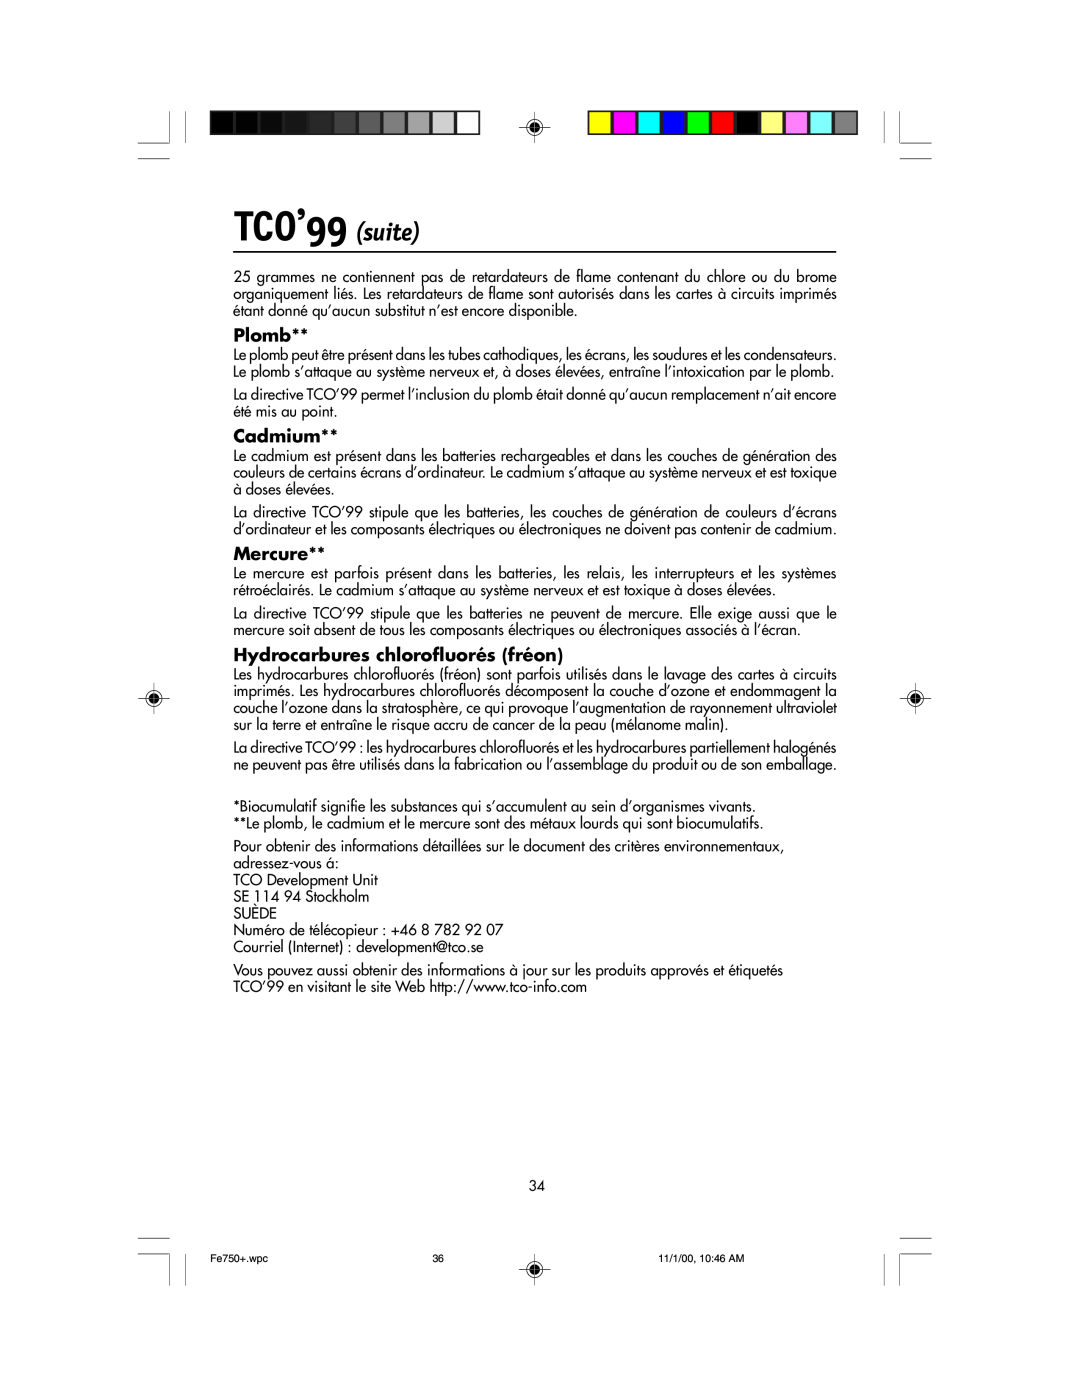 NEC FE750 Plus user manual TCO’99 suite, Plomb, Cadmium, Mercure, Hydrocarbures chlorofluorés fréon 